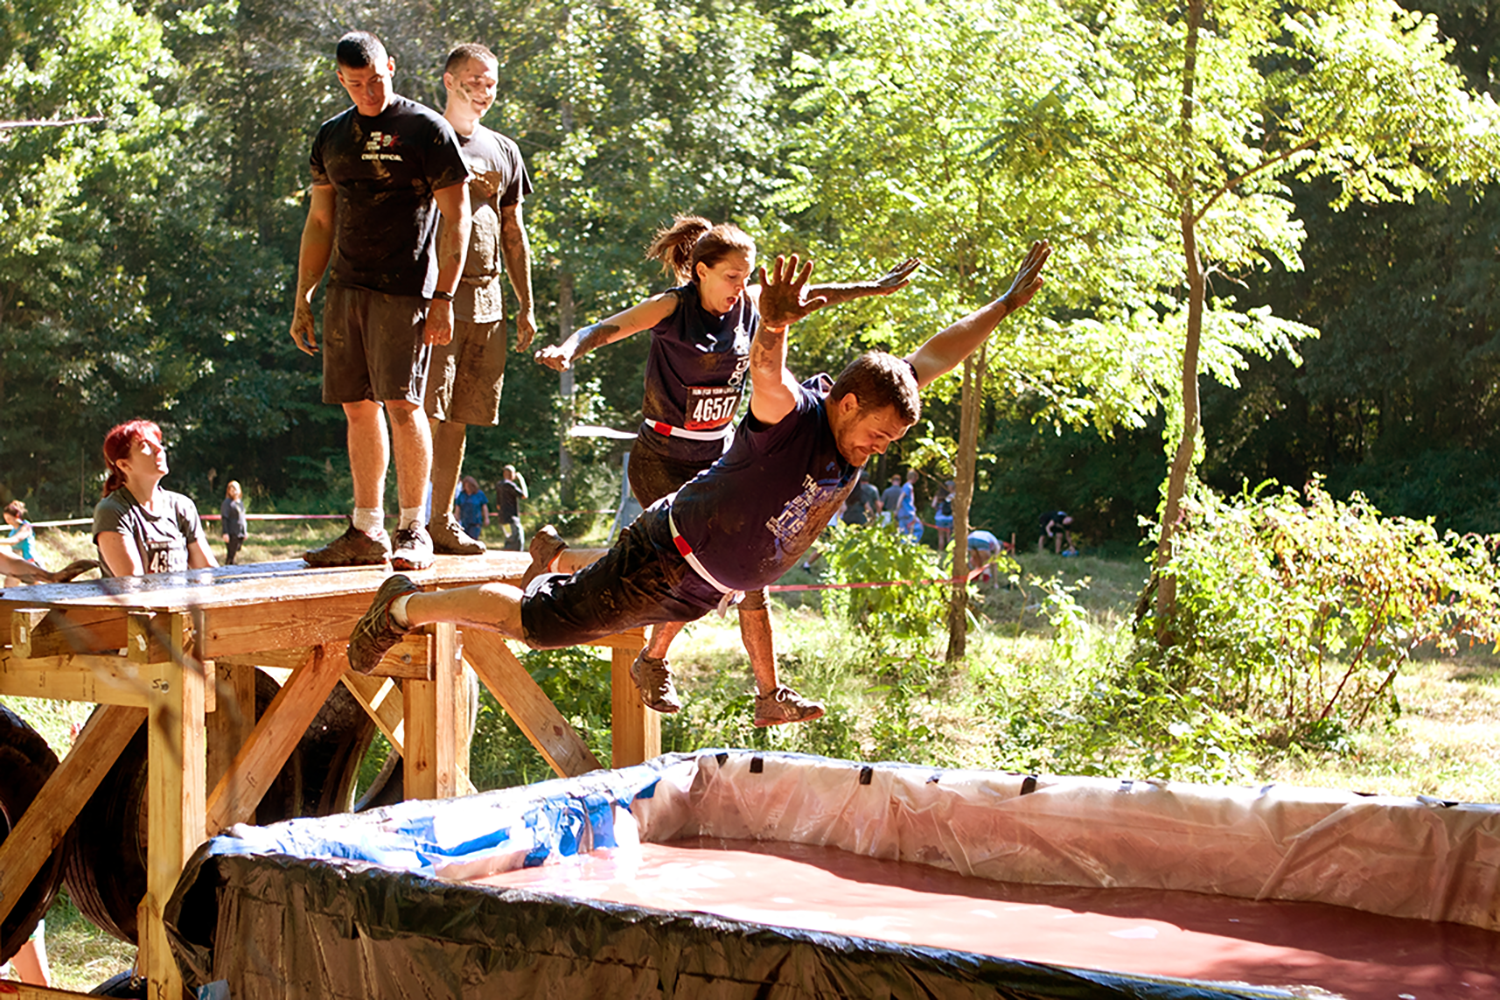 20 Best Indoor and Outdoor Team Building Activities for Kids